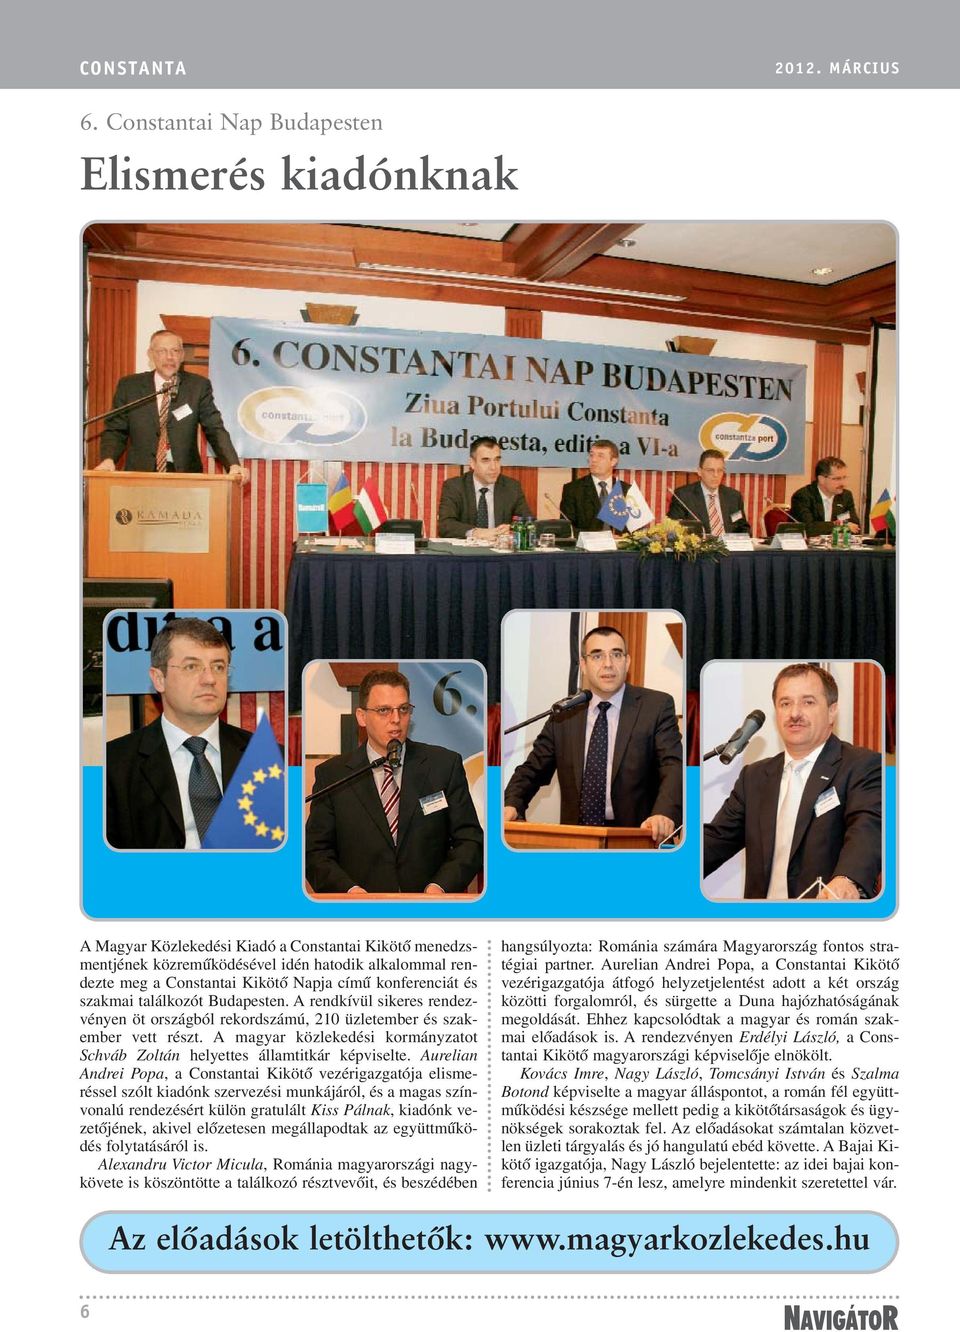 konferenciát és szakmai találkozót Budapesten. A rendkívül sikeres rendezvényen öt országból rekordszámú, 210 üzletember és szakember vett részt.